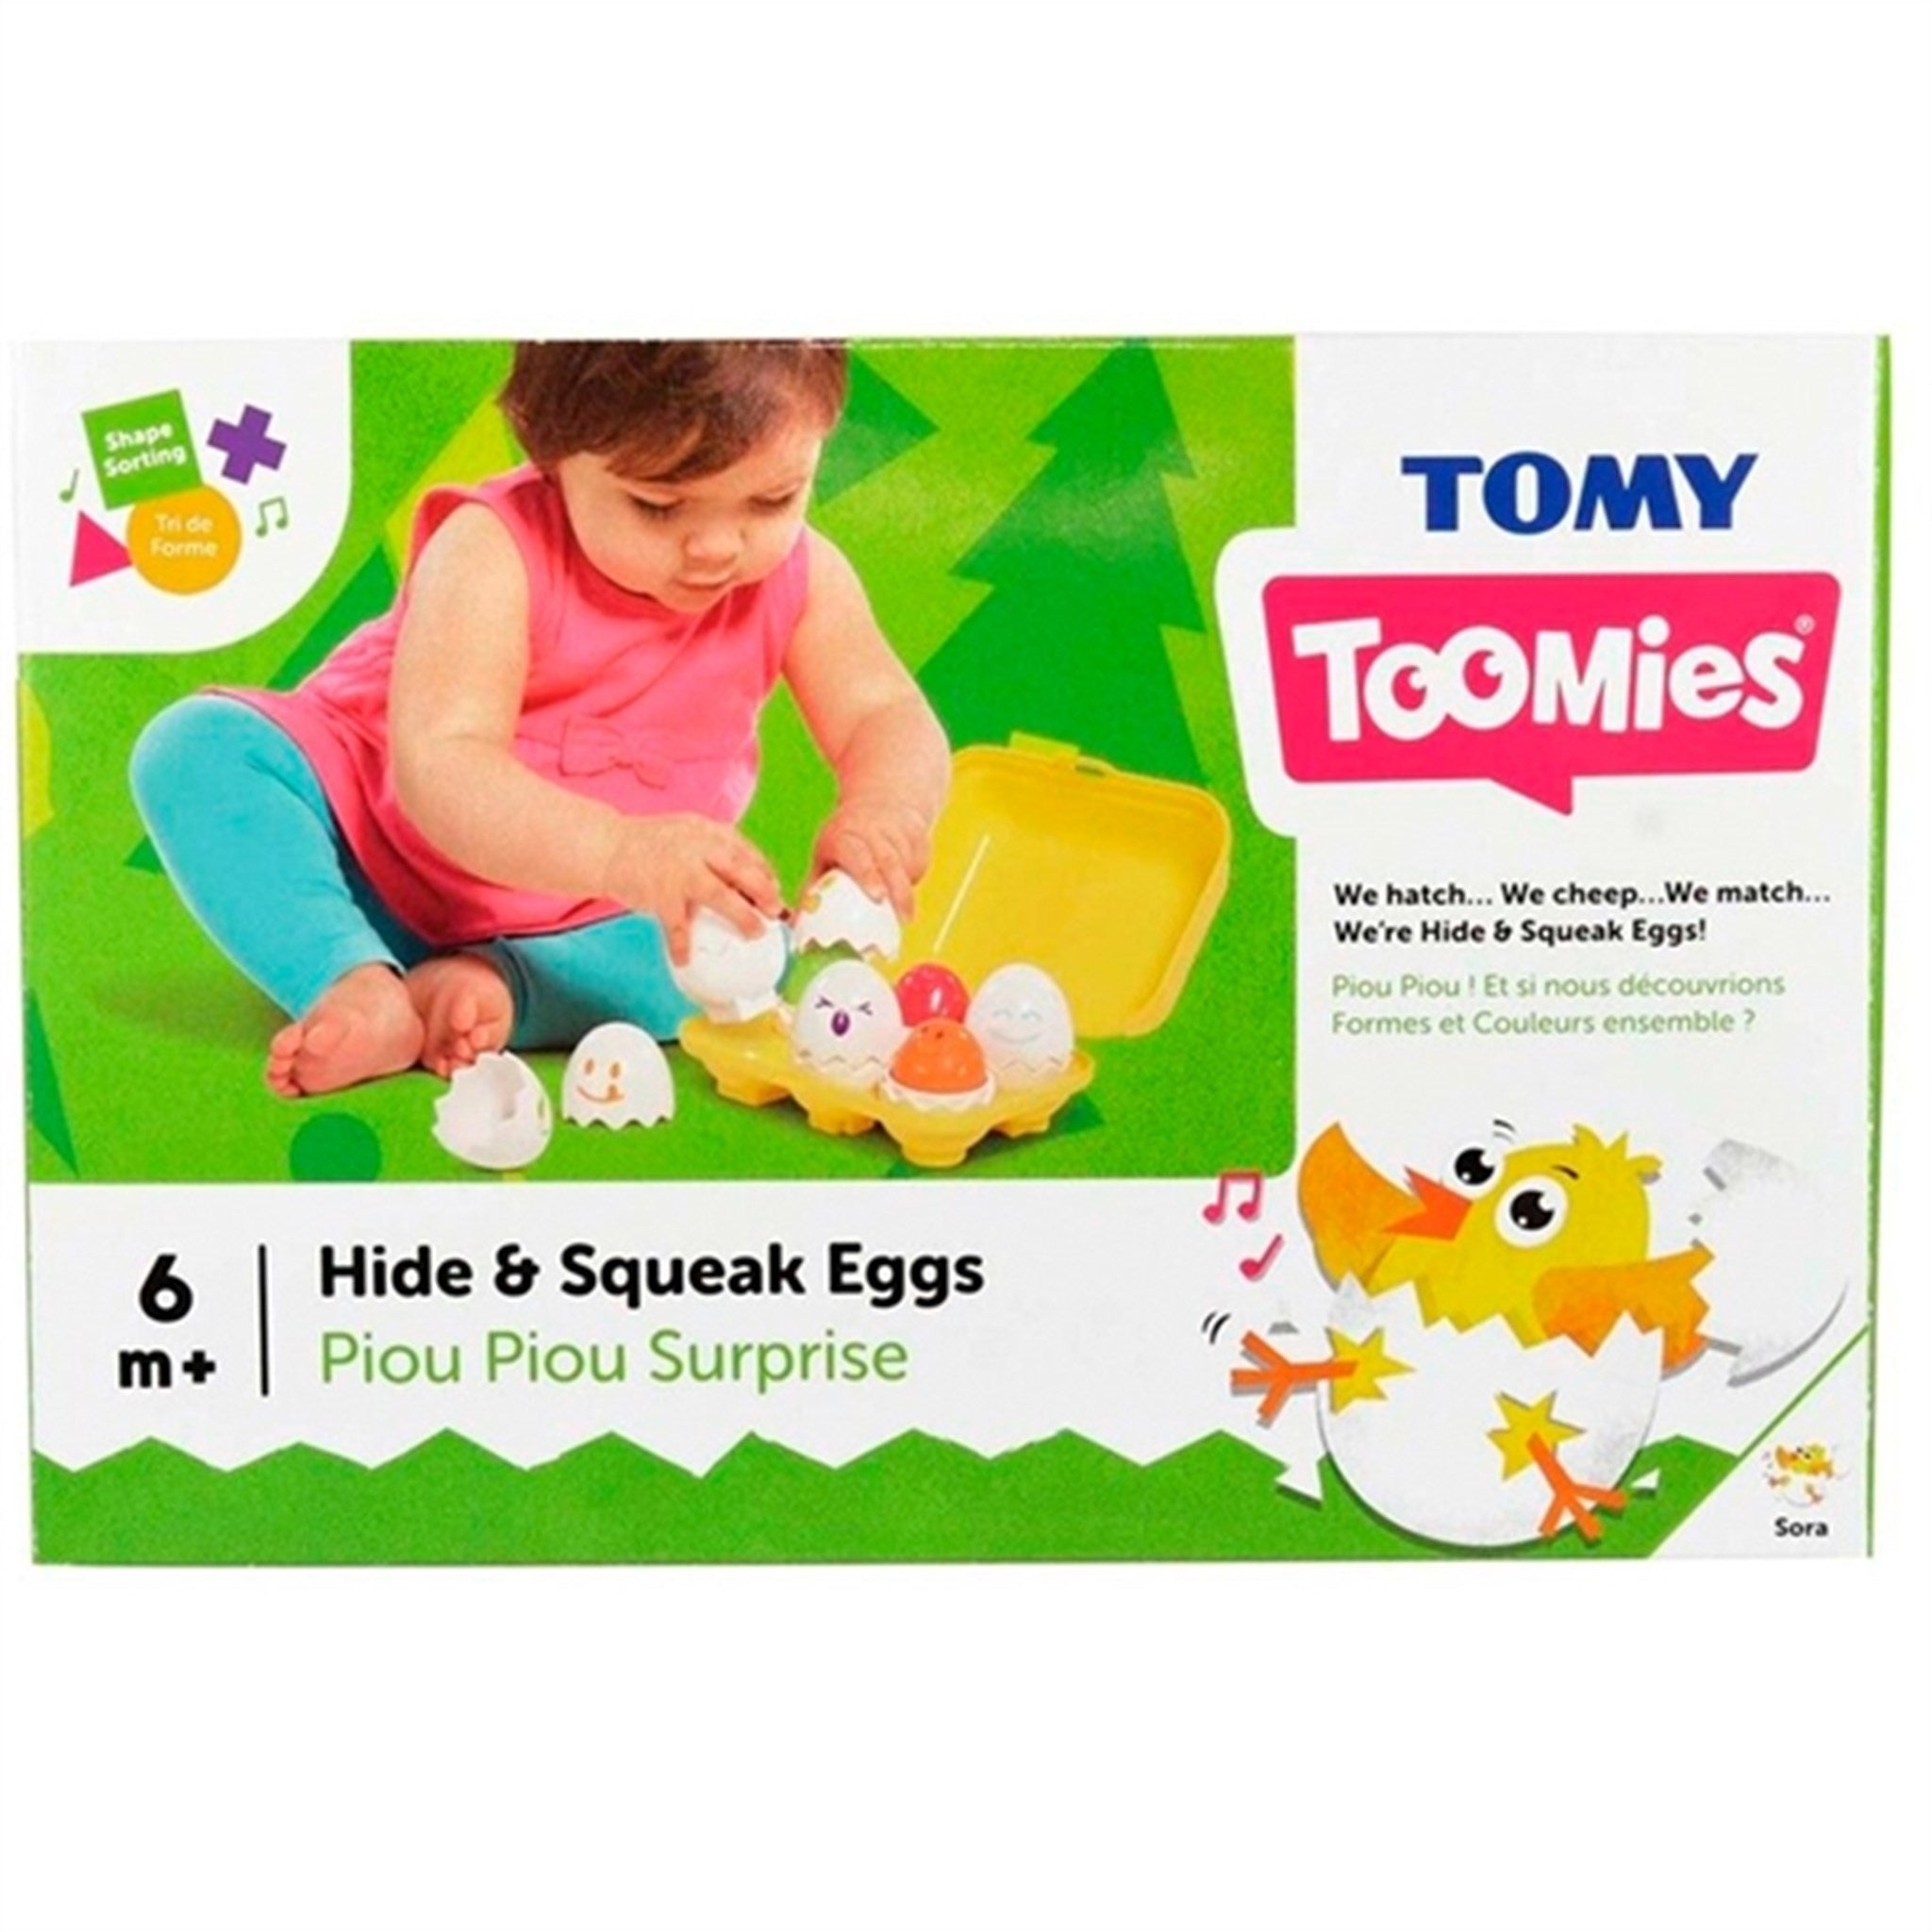 TOMY Toomies Hide & Squeak Eggs